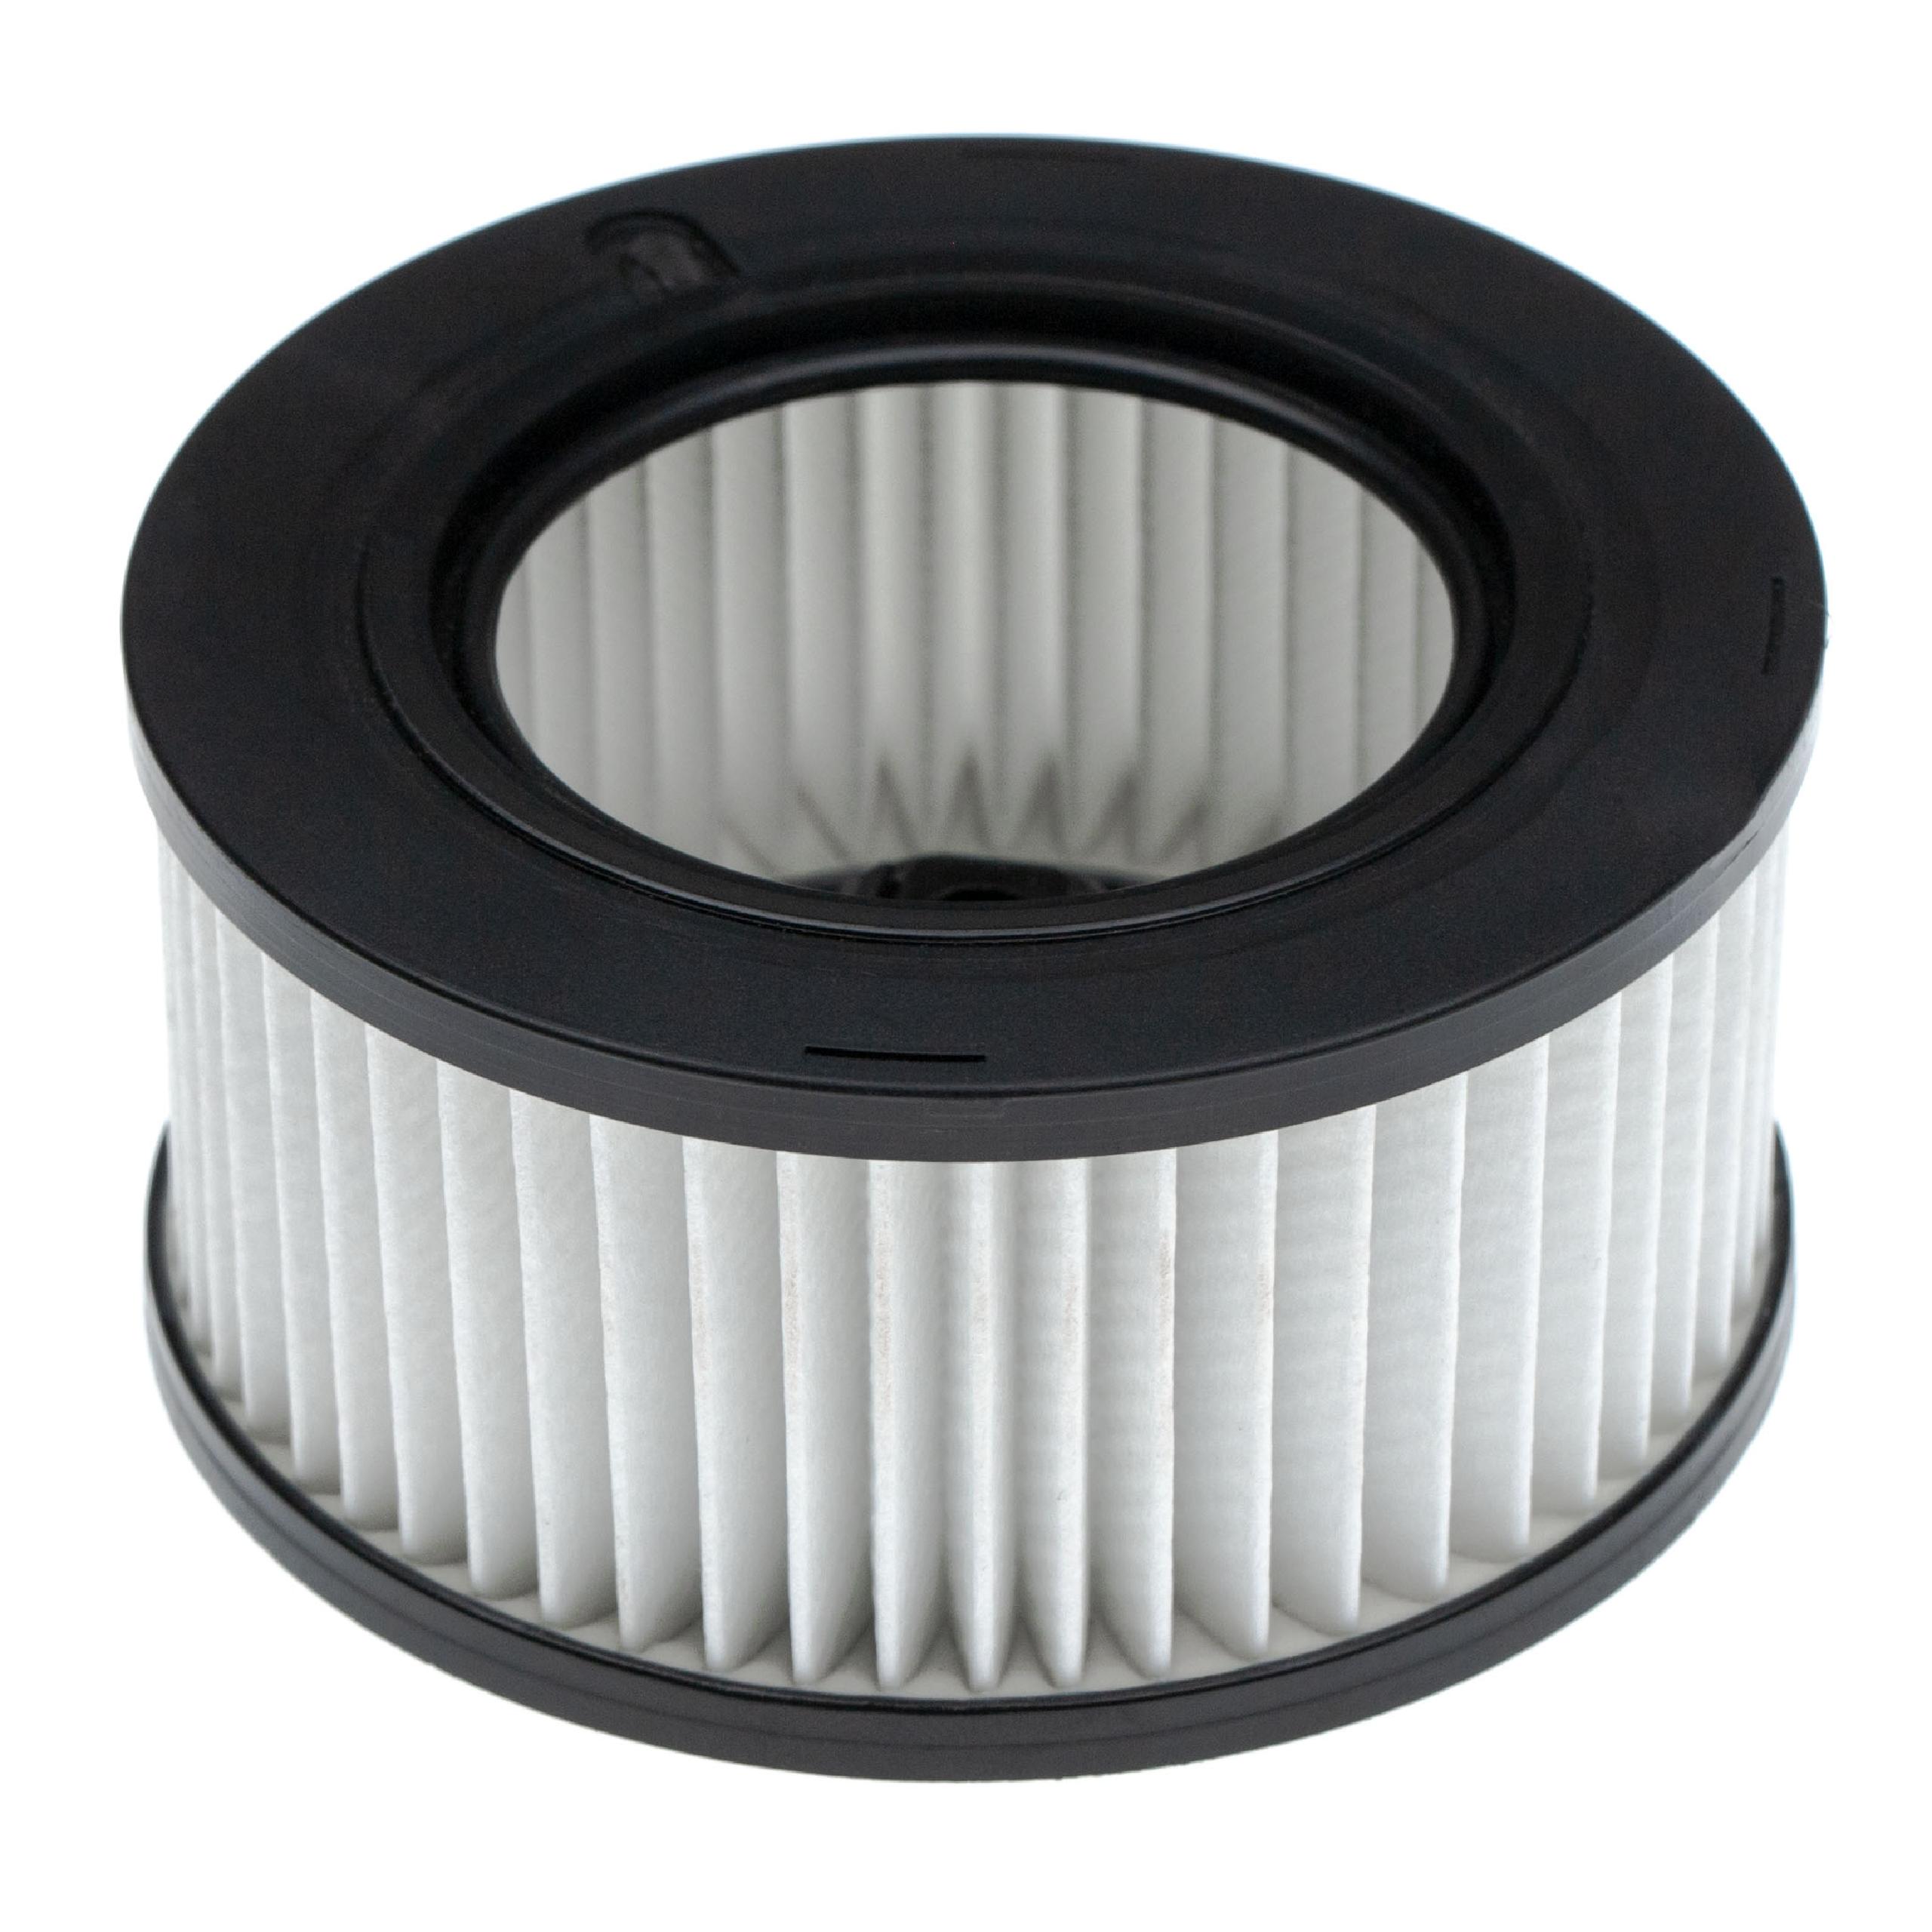 Filter als Ersatz für Stihl 11411201604, 1141 120 1604, 1141-120-1604 Motorsäge - HD2-Luftfilter